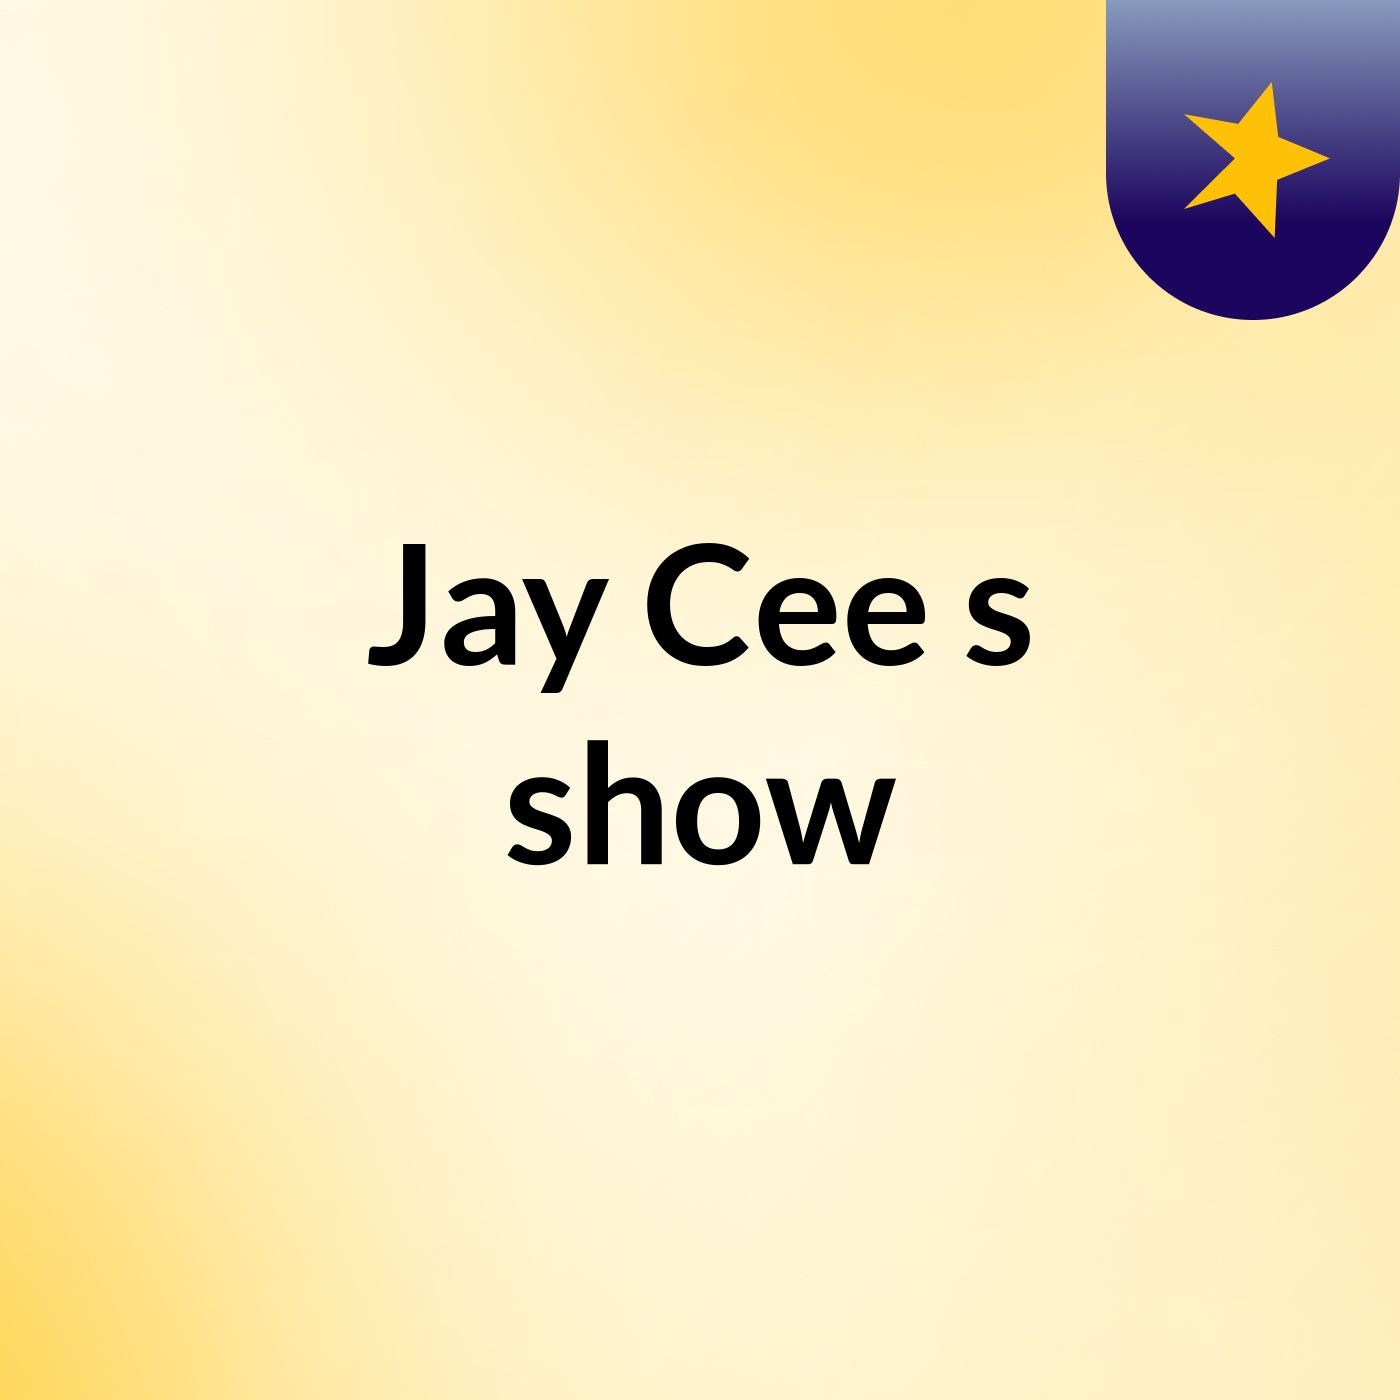 Jay Cee's show